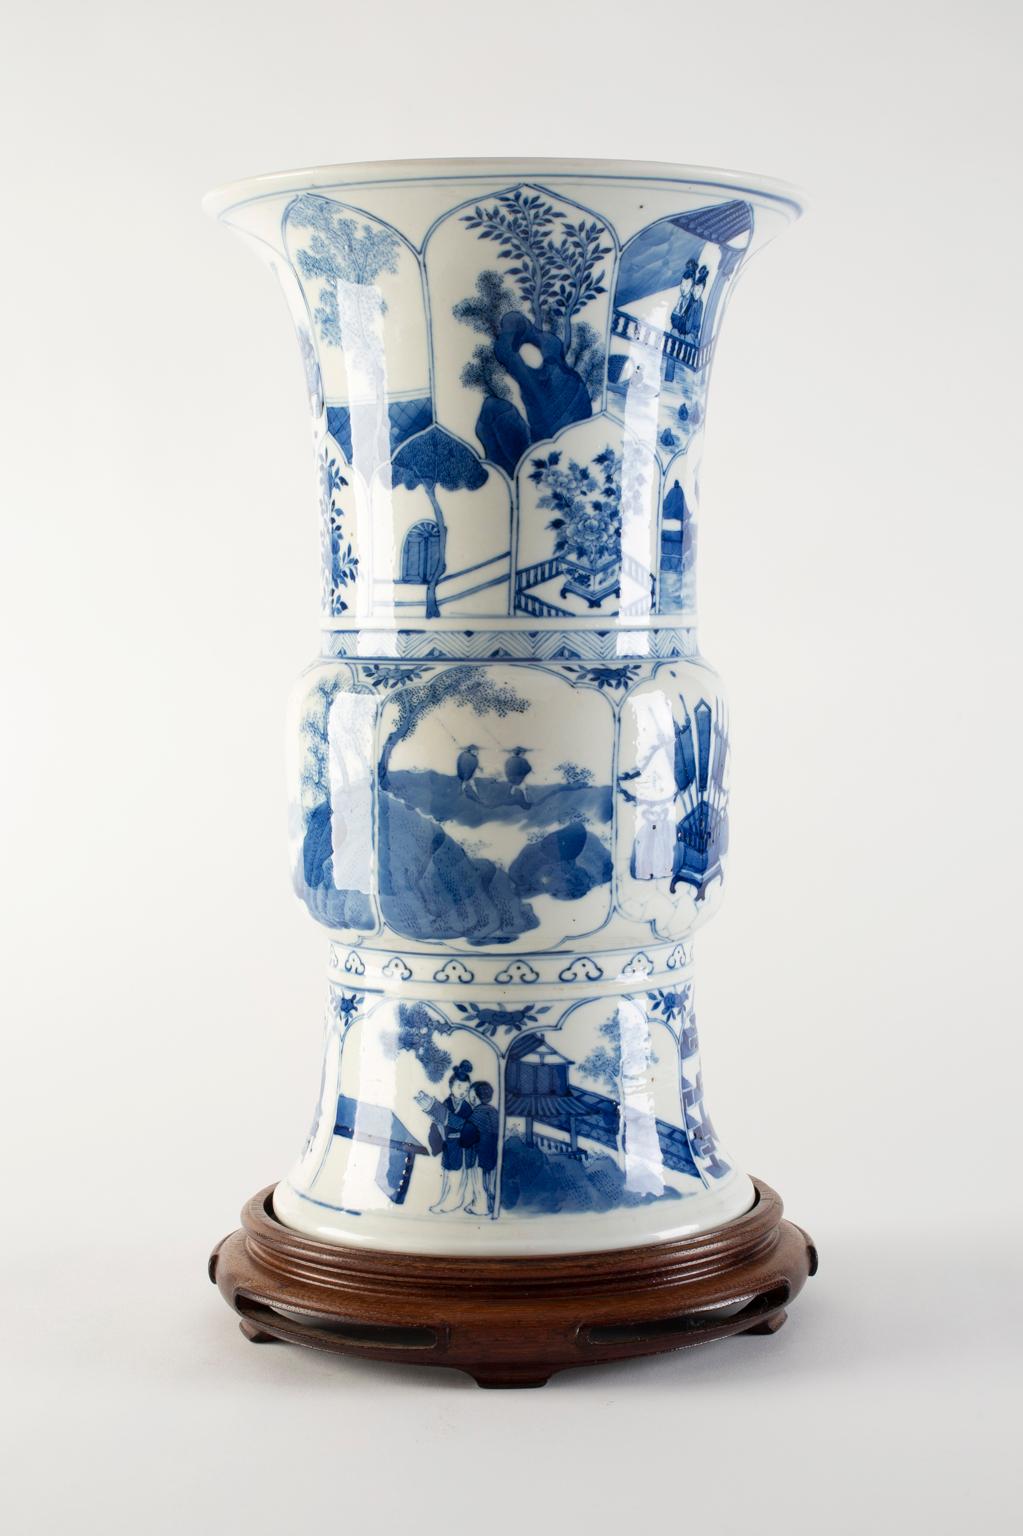 Provenienz: eine Park Avenue-Sammlung

Ausgestellt: The Oriental Ceramics Society of Hong Kong, Blau-Weiß-Ausstellung Nr. 105 (Label auf der Unterseite)

Chinesische Gu-Vase aus blau-weiß glasiertem Porzellan der Kangxi-Periode, über und über mit